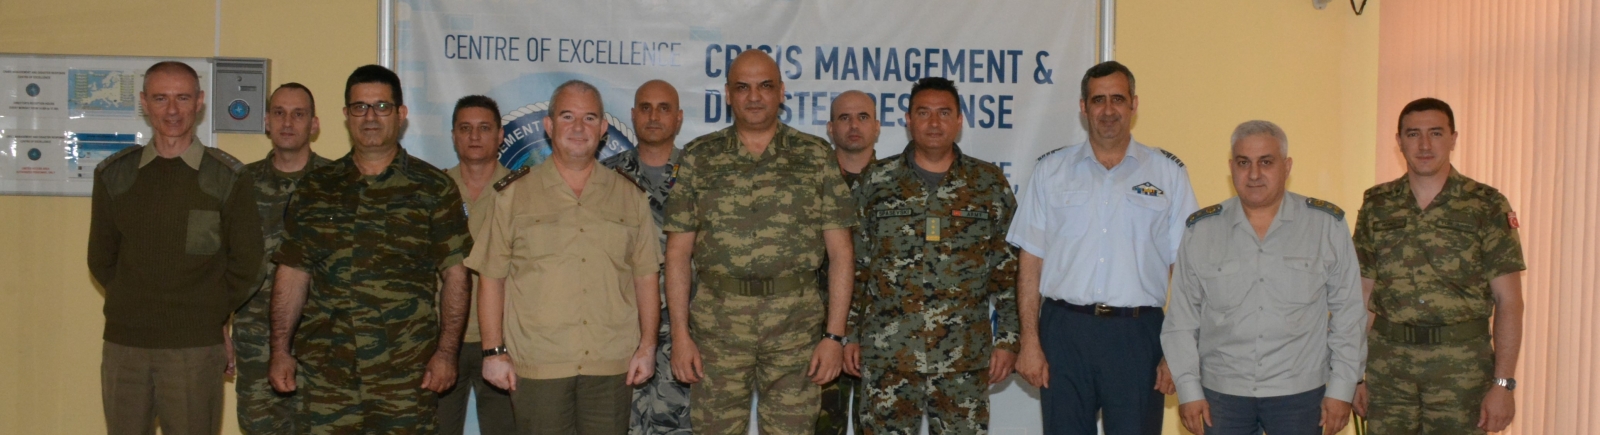 CMDR COE hosted a delegation of SEEBRIG led by Brigadier General Numan Yediyildiz, TUR-A, SEEBRIG Commander,  May 16 2016